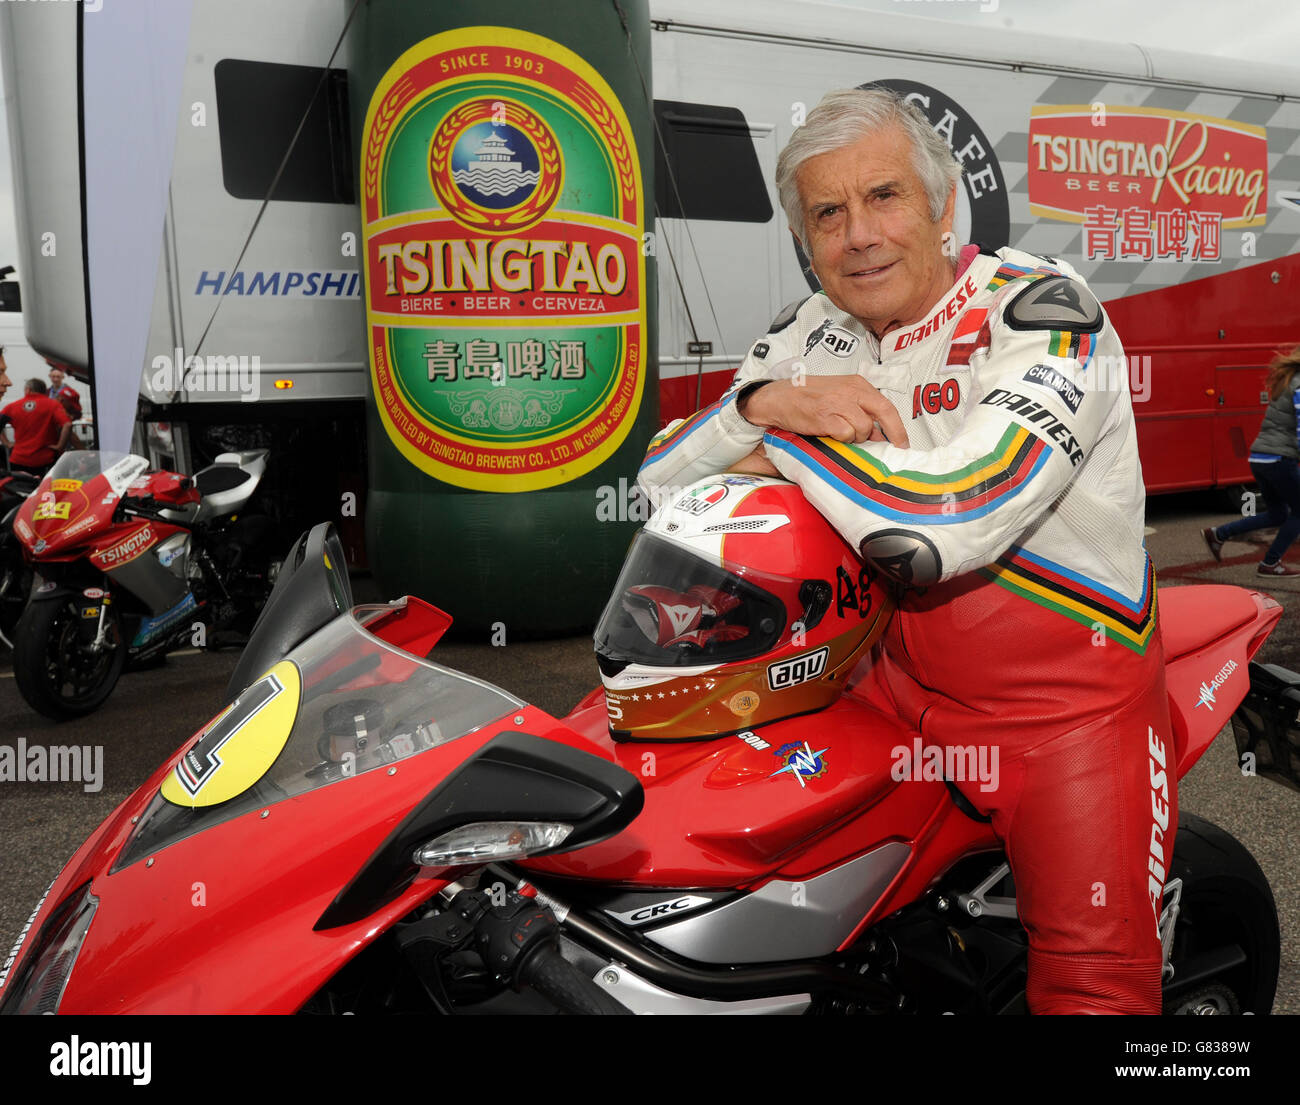 Weltmeister Motorradrennfahrer Giacomo Agostini unterstützt das Tsingtao MV Agusta Rennteam während der britischen Superbike-Serie auf dem Snetterton Circuit, Norwich, Norfolk. Stockfoto